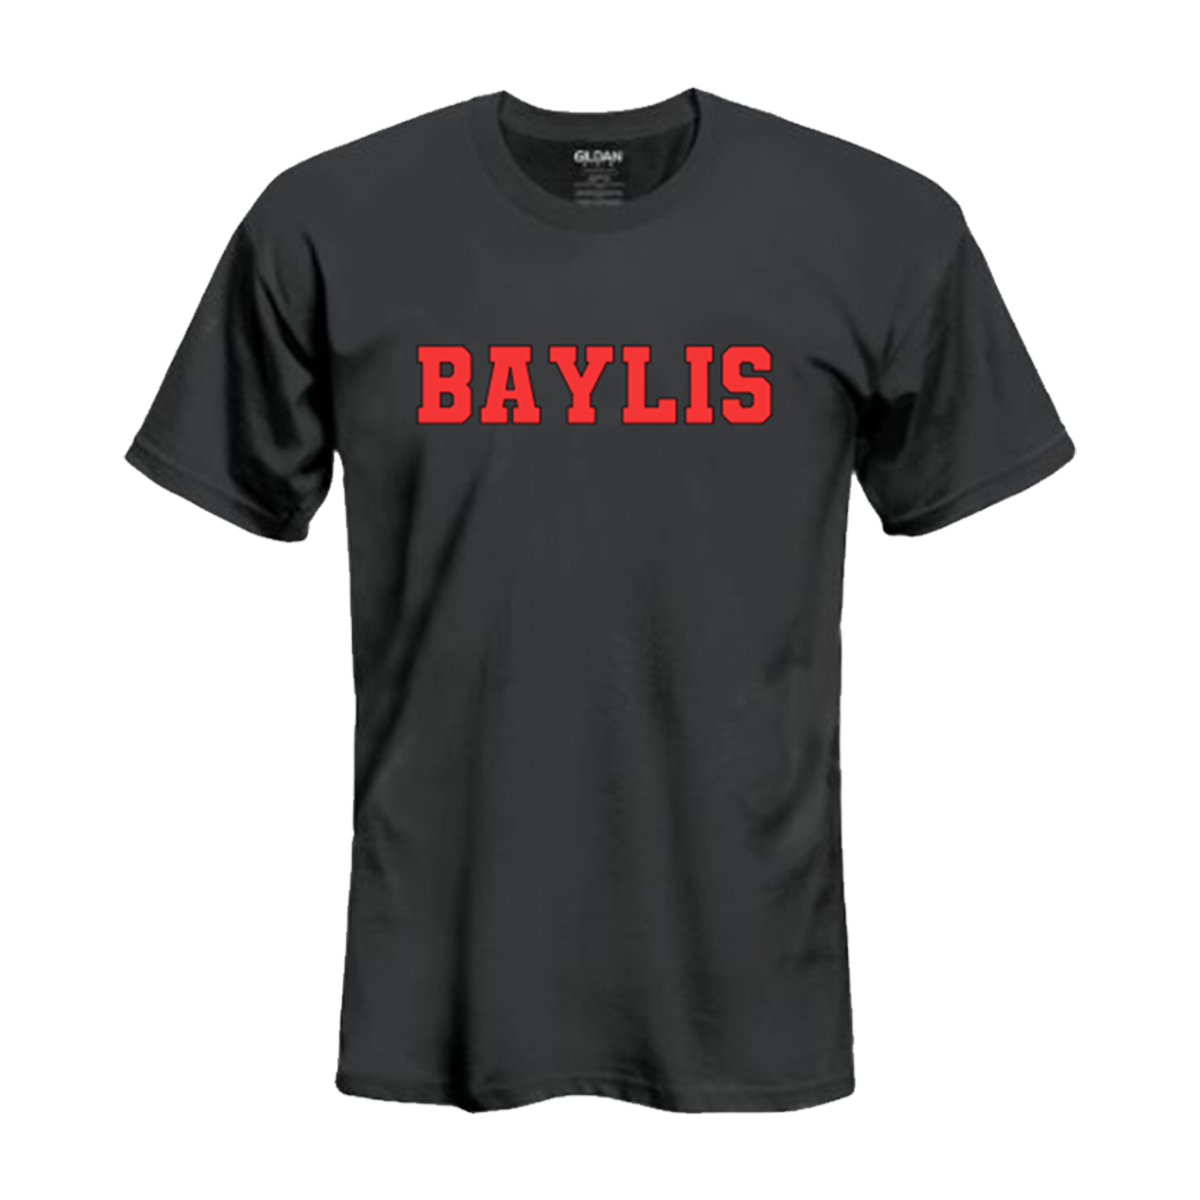 Baylis T-Shirt